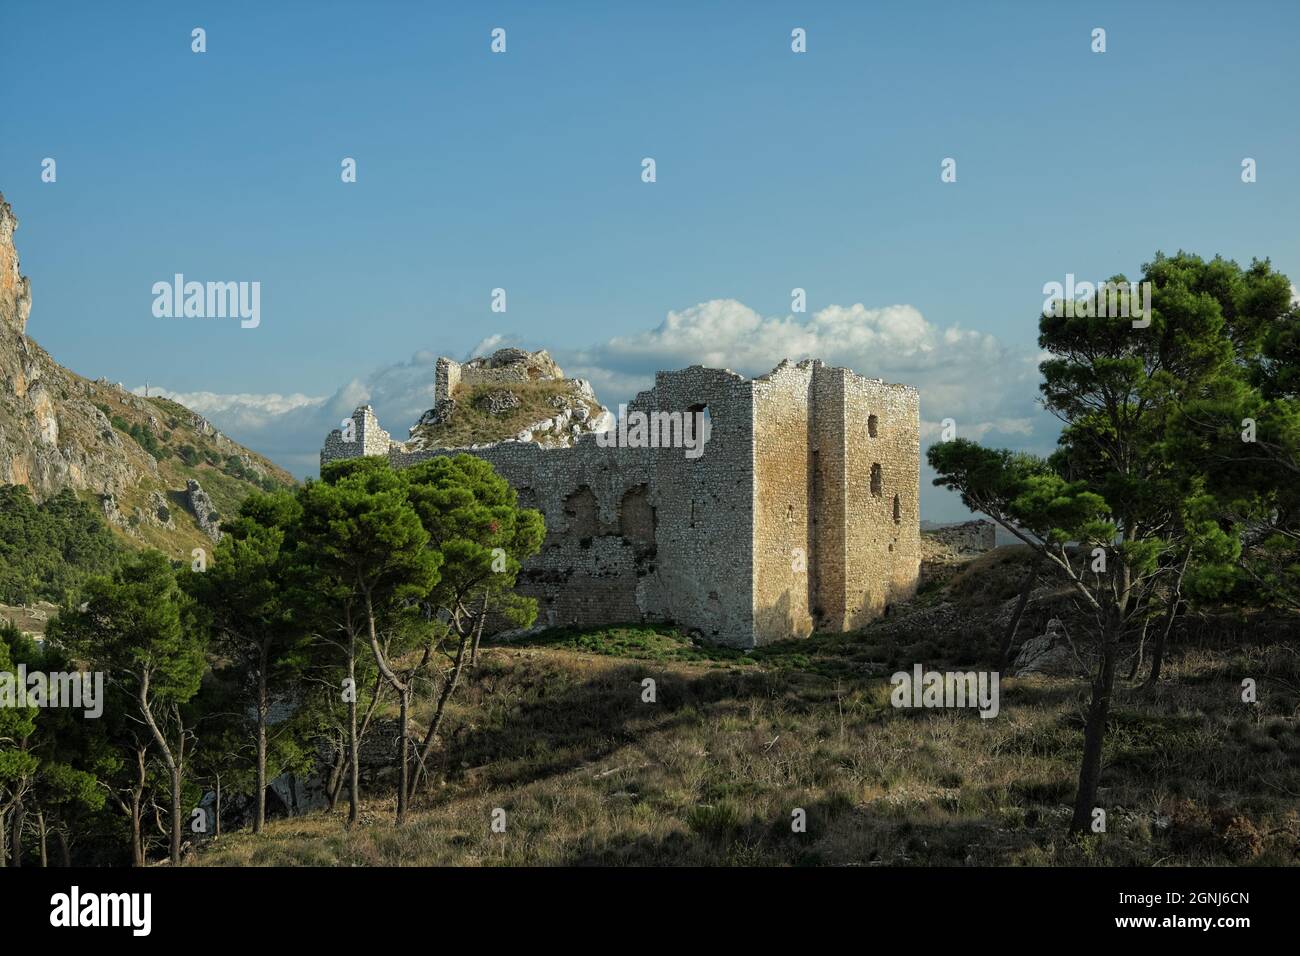 Castello di montagna in Sicilia rovine del centro storico fortificato di Terravecchia a Caltavuturo (Palermo) Foto Stock